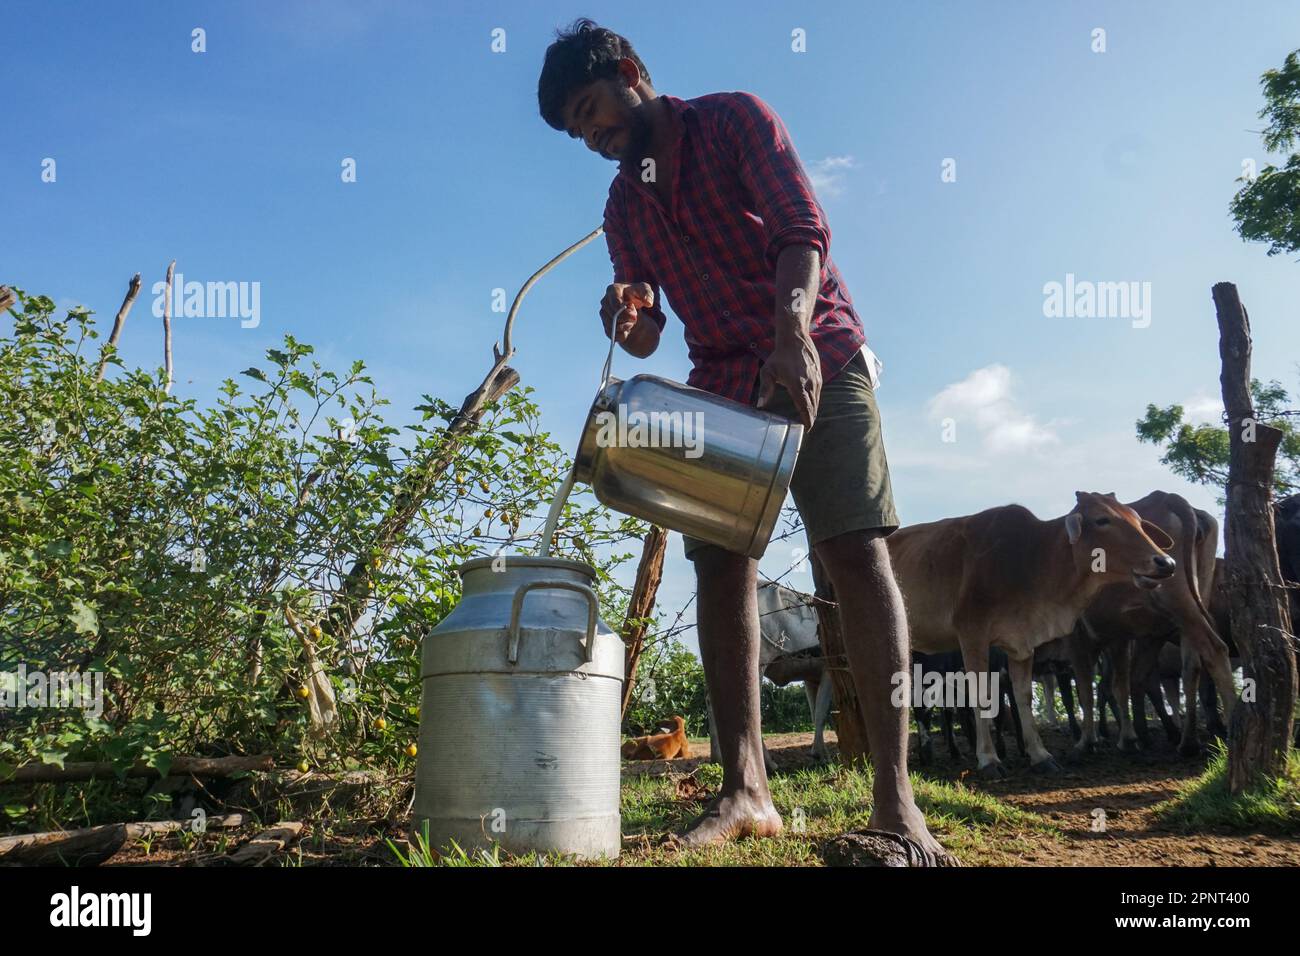 Varatharasan Dinarsan gießt am 25. August 2021 Kuhmilch in einen Behälter in Cheddikulam, Vavuniya, Sri Lanka. Aufgrund des Mangels an Milchpulver aufgrund einer Änderung der Einfuhrsteuern sind die Nachfrage nach Kuhmilch und die Preise für Kuhmilch gestiegen. (Thayalini Indrakularasa/Global Press Journal) Stockfoto